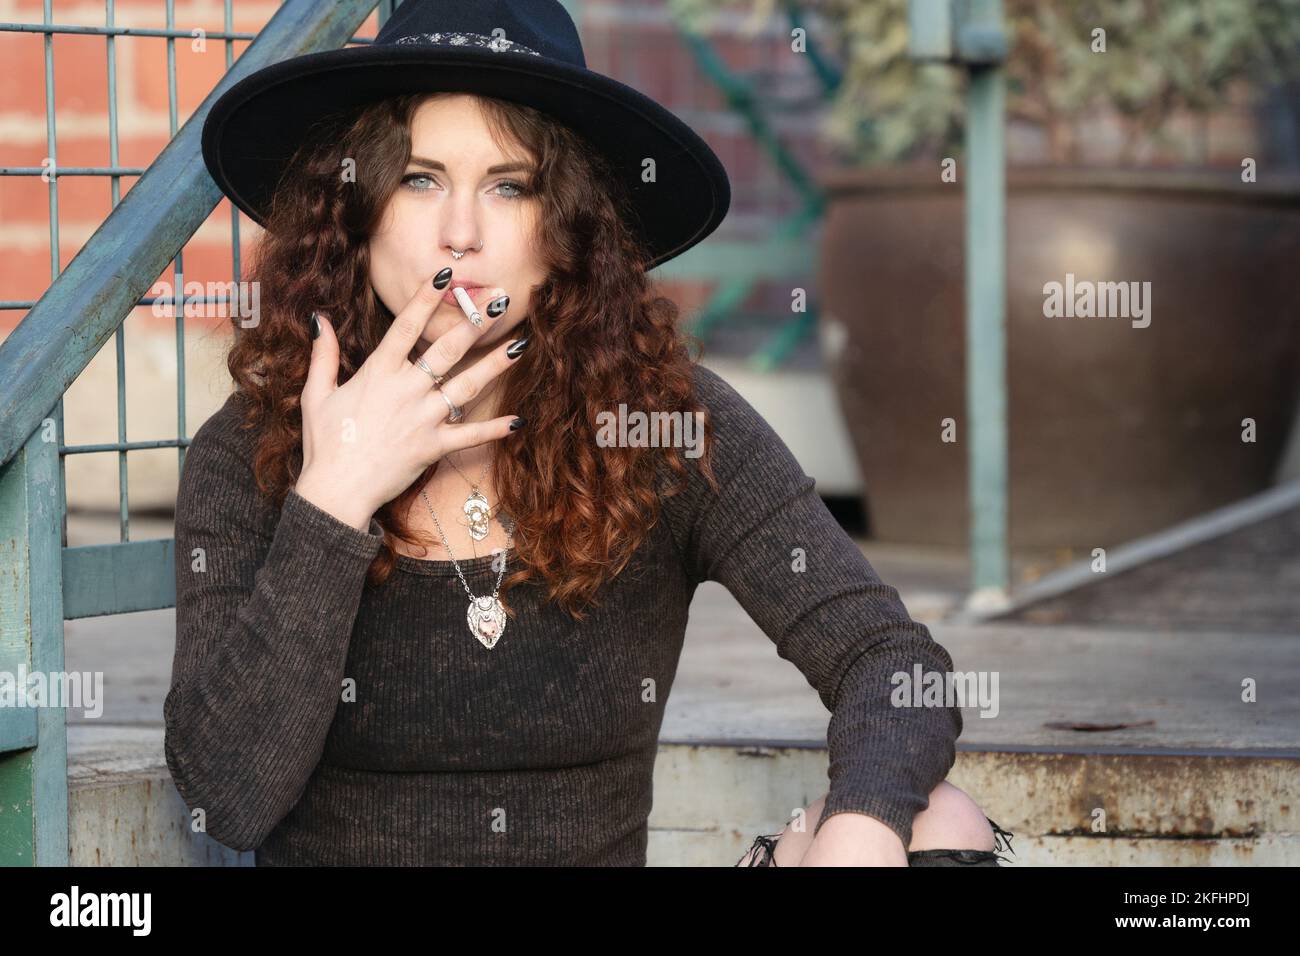 un ritratto naturale a metà corpo di una donna in un cappello nero che fuma una sigaretta Foto Stock